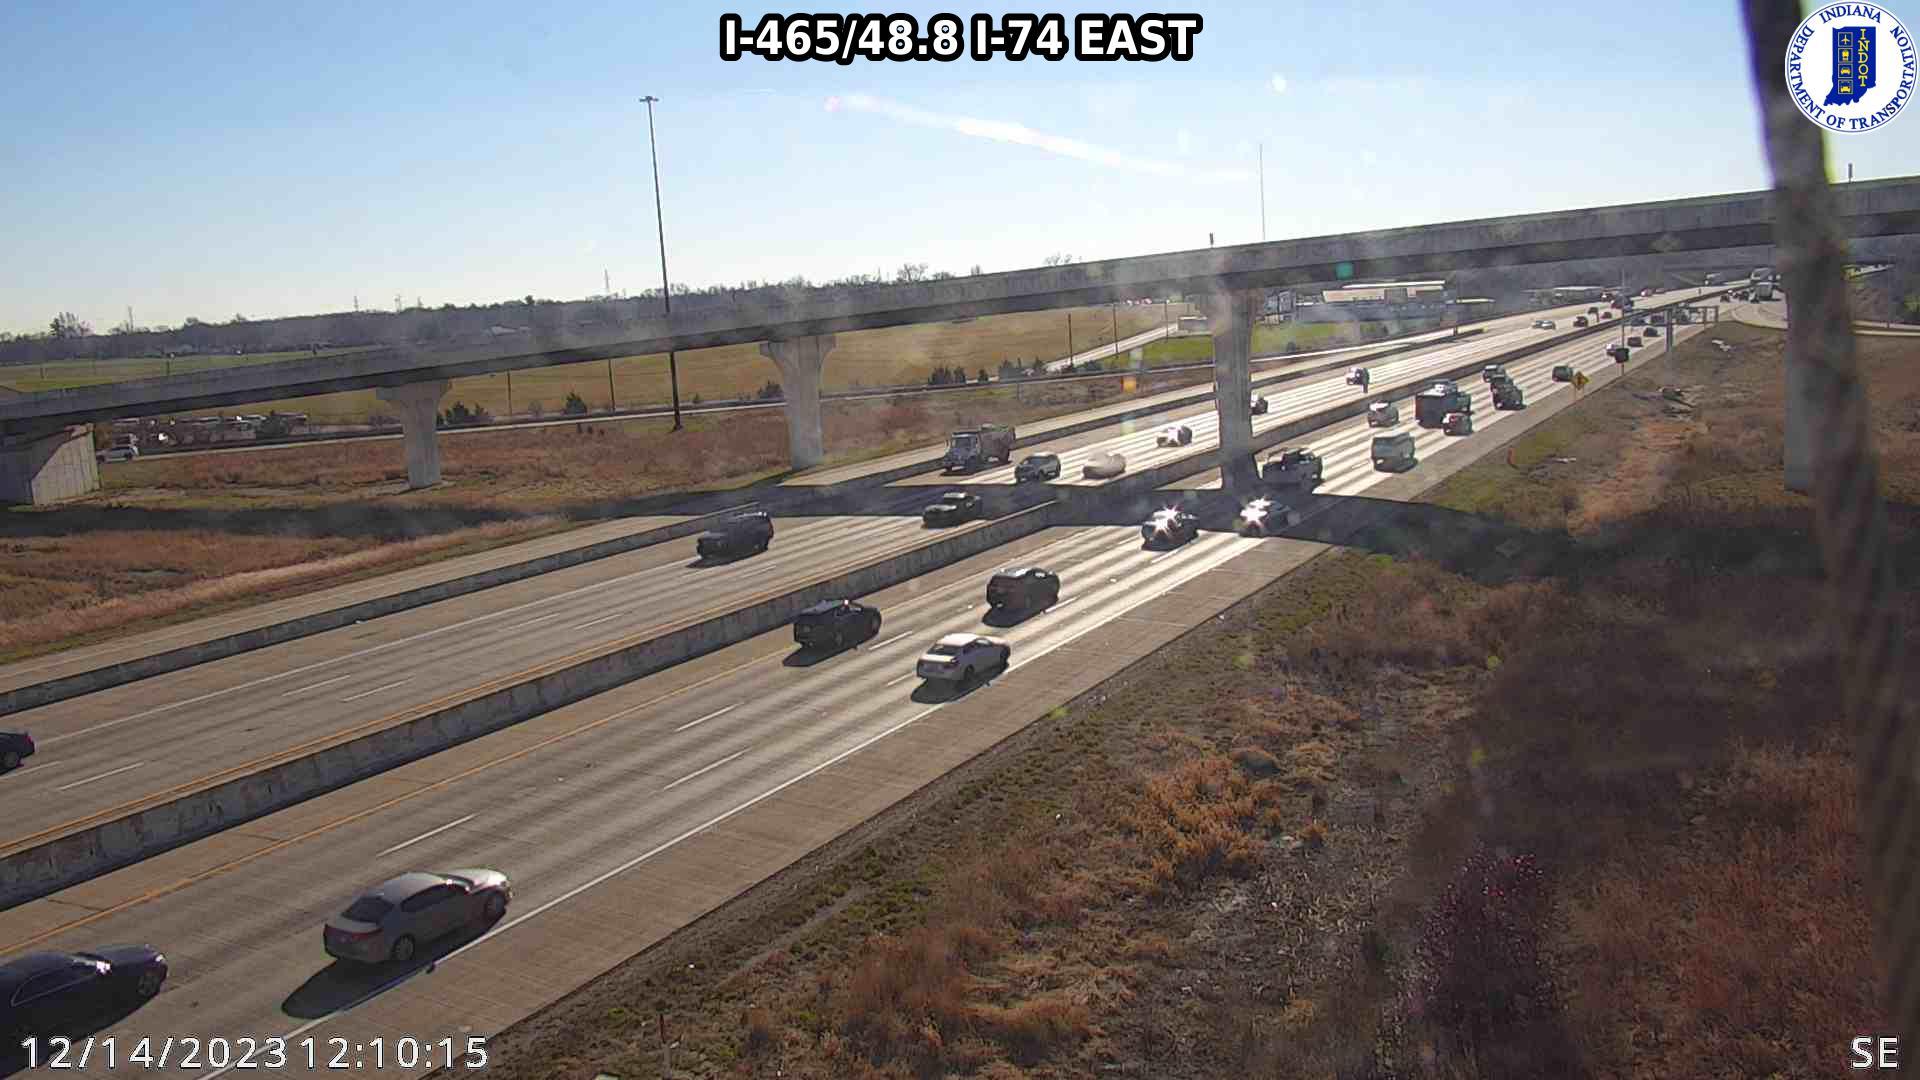 Traffic Cam Indianapolis: I-465: I-465/48.8 I-74 EAST